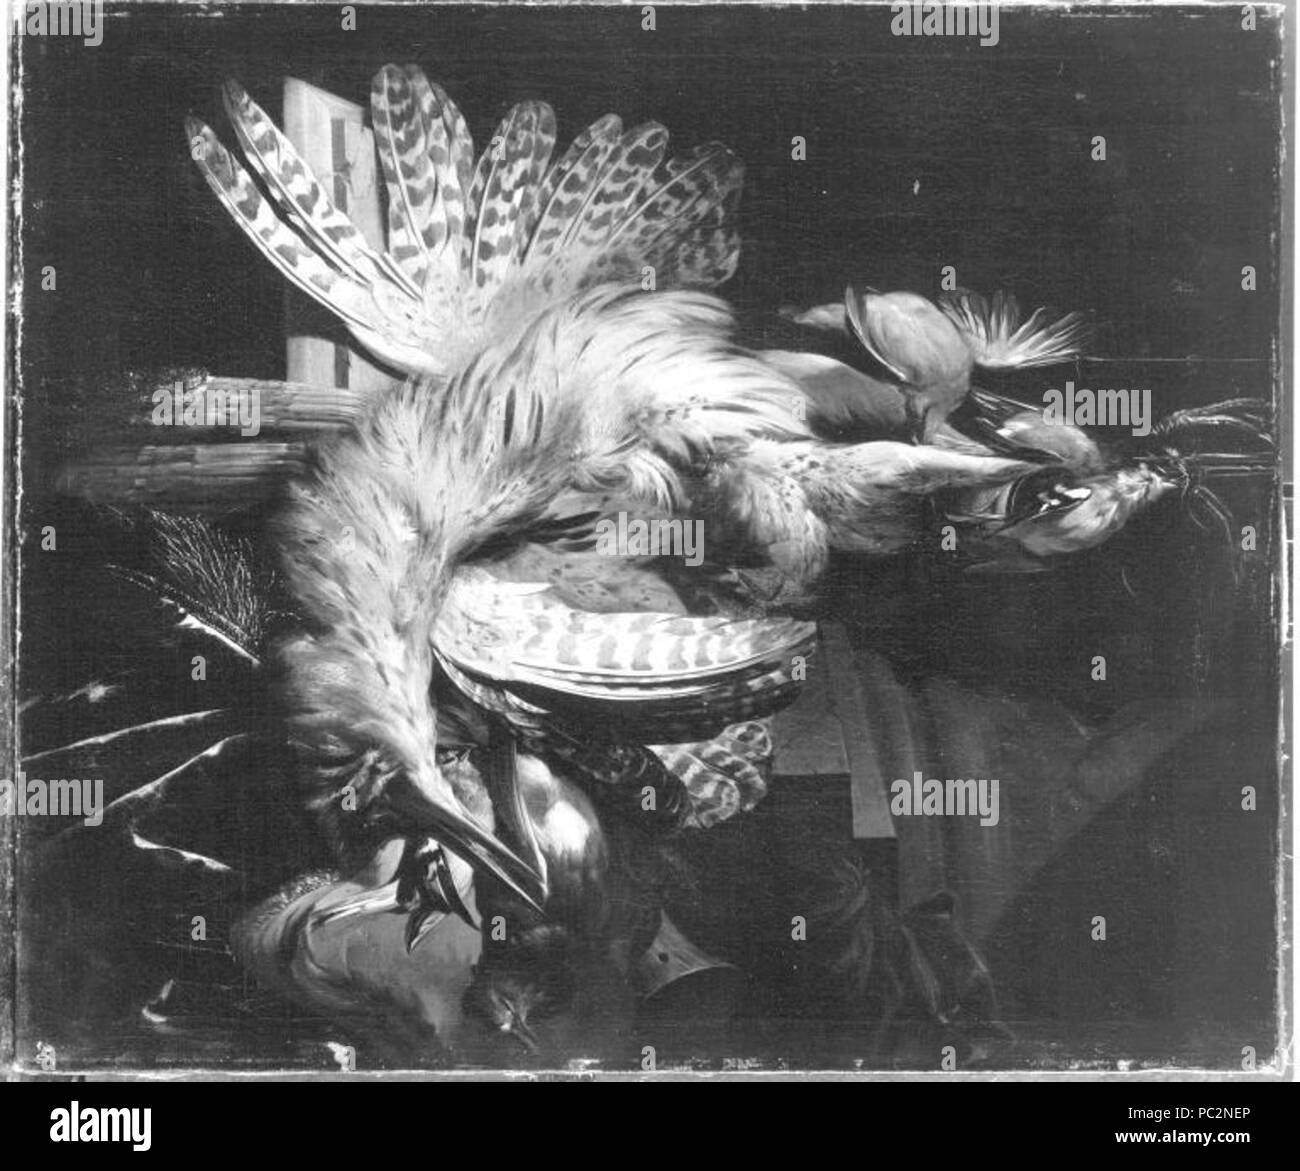 Abramo Mignon - Jagdbeute mit Rohrdommel und weiteren Vögeln - 1702 - Foto Stock